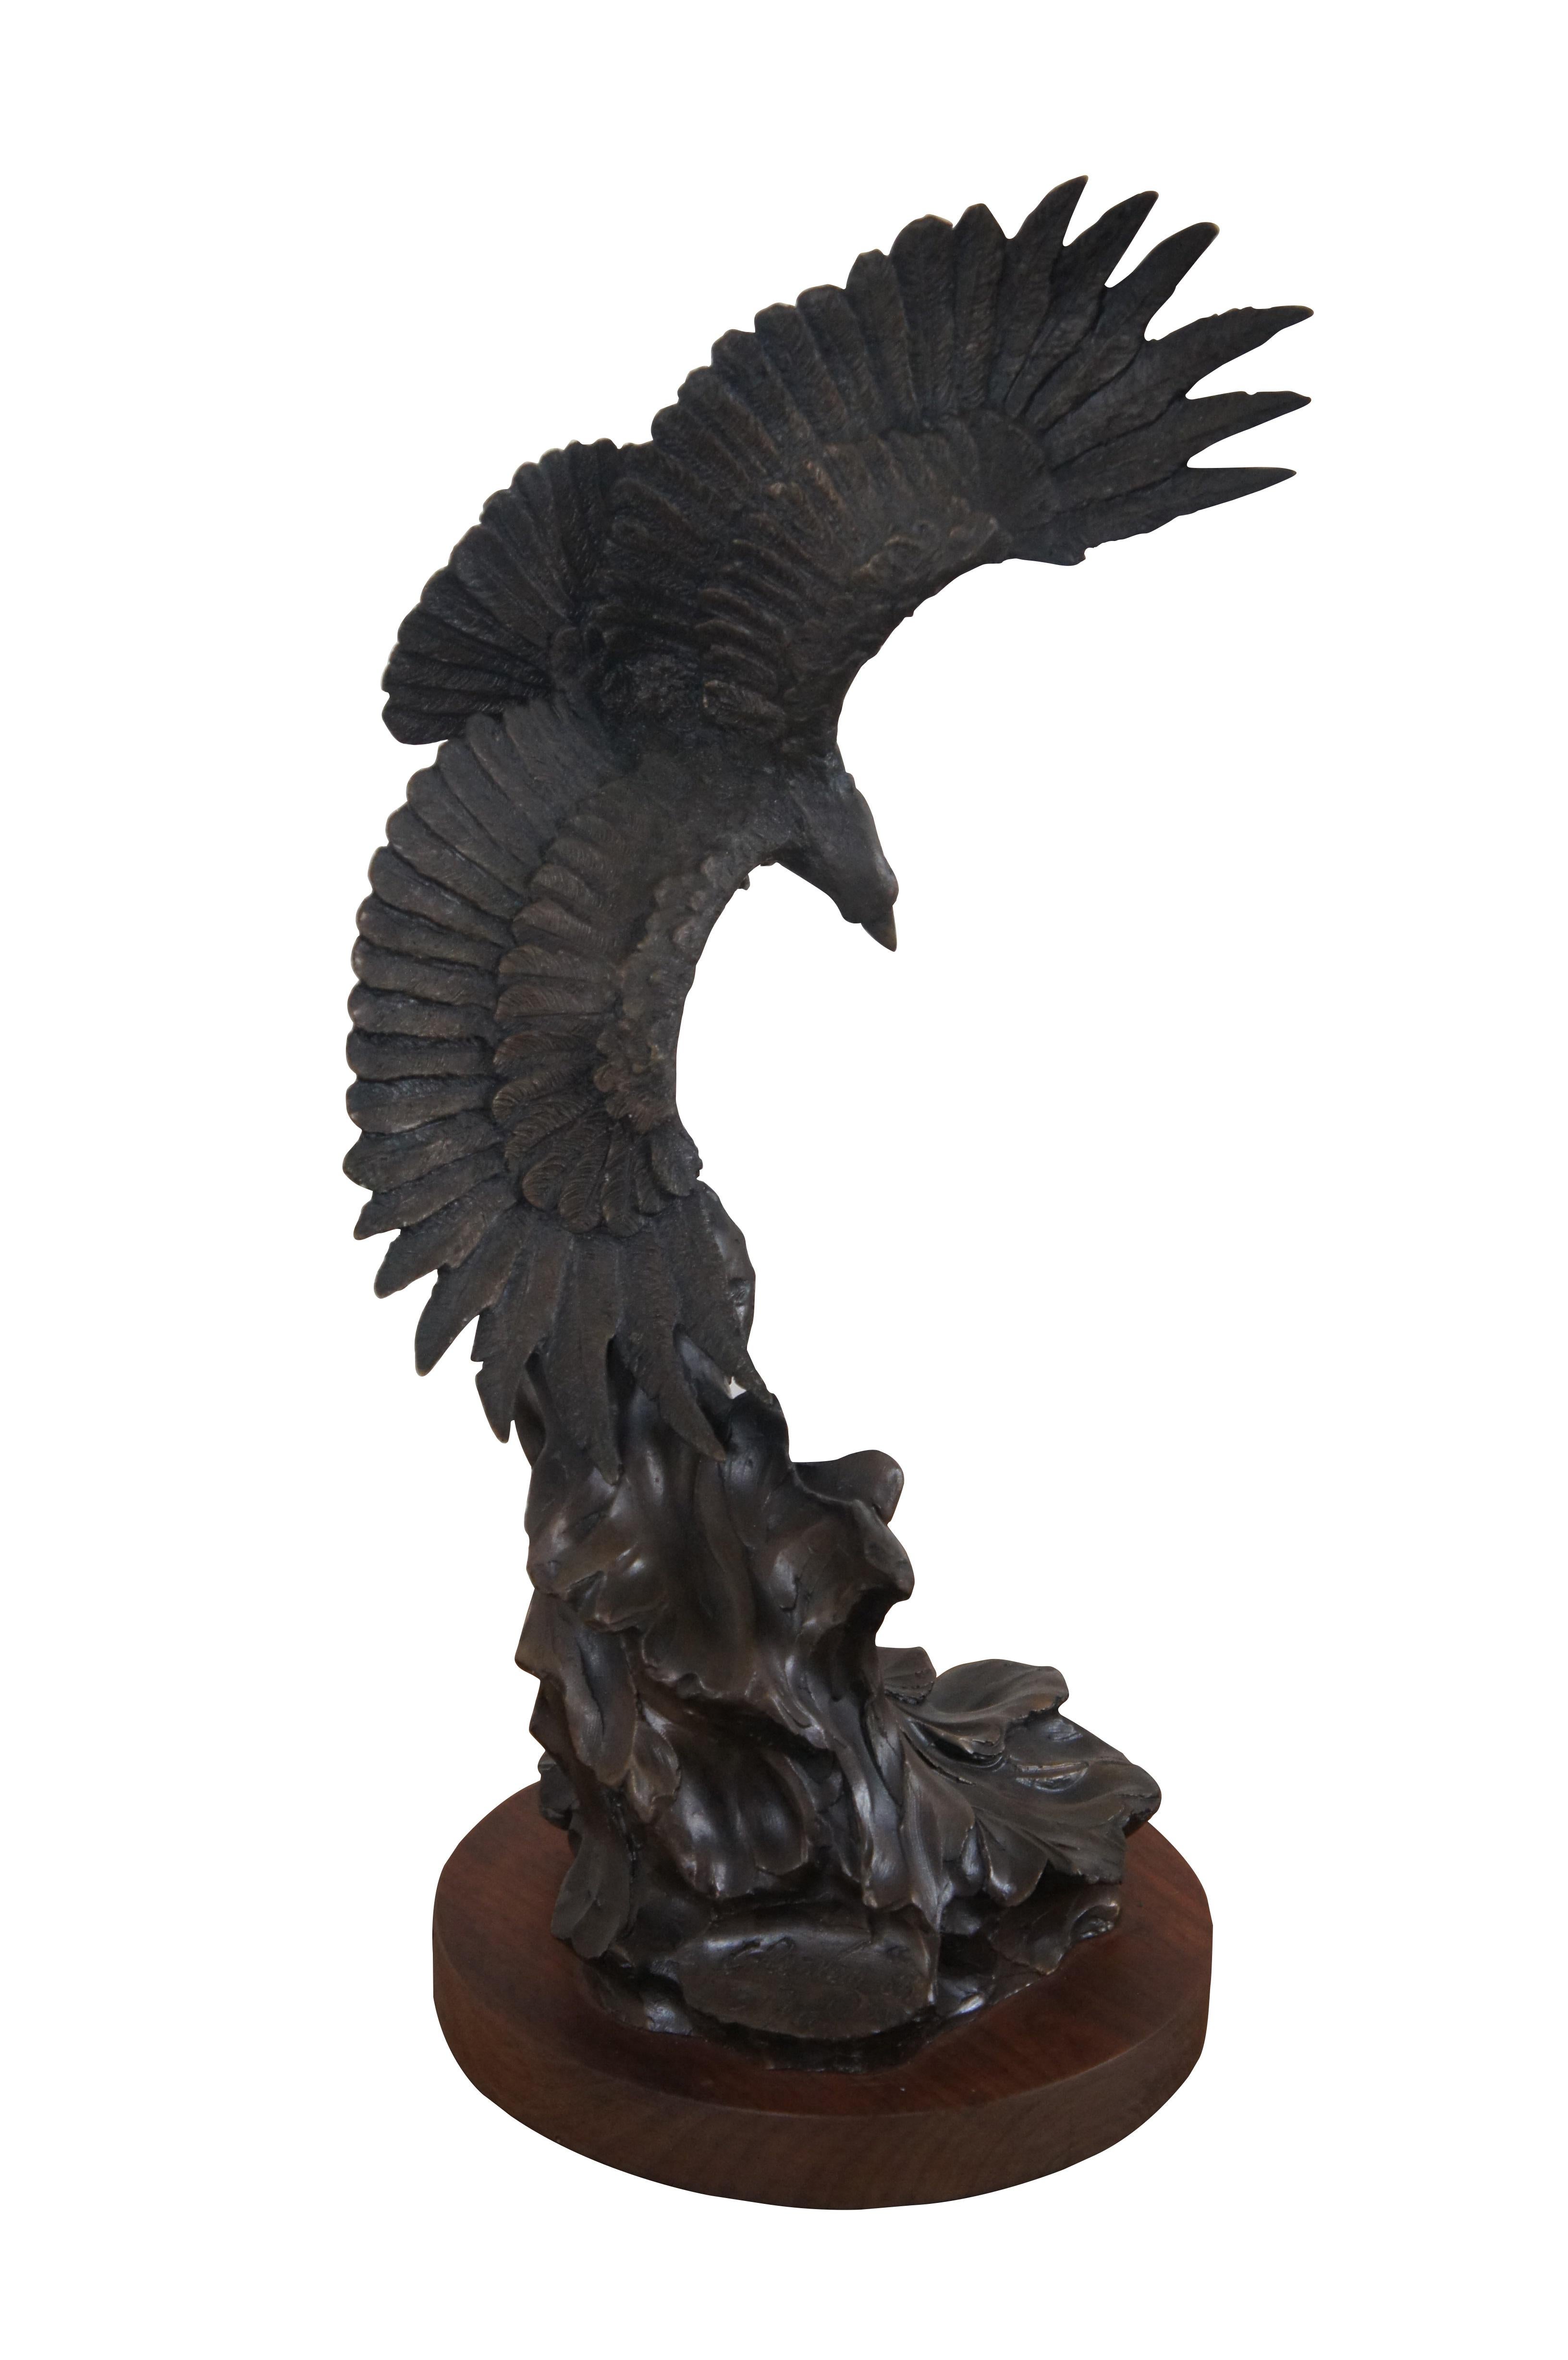 Vintage-Bronzeskulptur, die einen realistisch dargestellten amerikanischen Weißkopfseeadler / Falken / Vogel darstellt, der über abstrakte Wellen hinwegfliegt, montiert auf einem runden Holzsockel. Unterzeichnet auf Basis C. Ra. Van 1983. Nummeriert